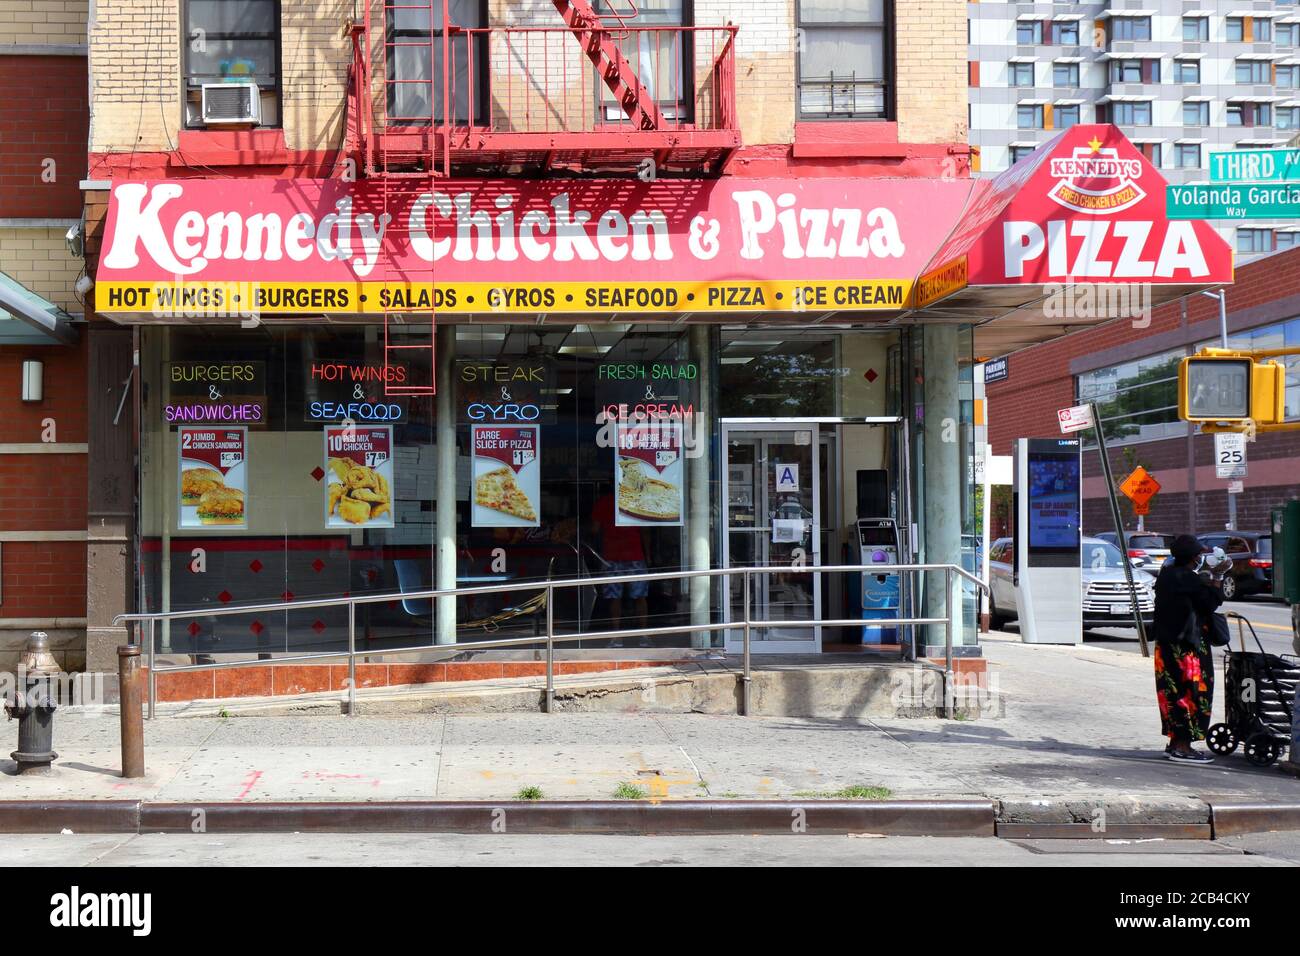 Kennedy's Fried Chicken & Pizza, 3042 Third Ave, Bronx, New York. Foto di fronte al negozio di New York di un ristorante di catena di pollo fritto nel quartiere di Melrose. Foto Stock